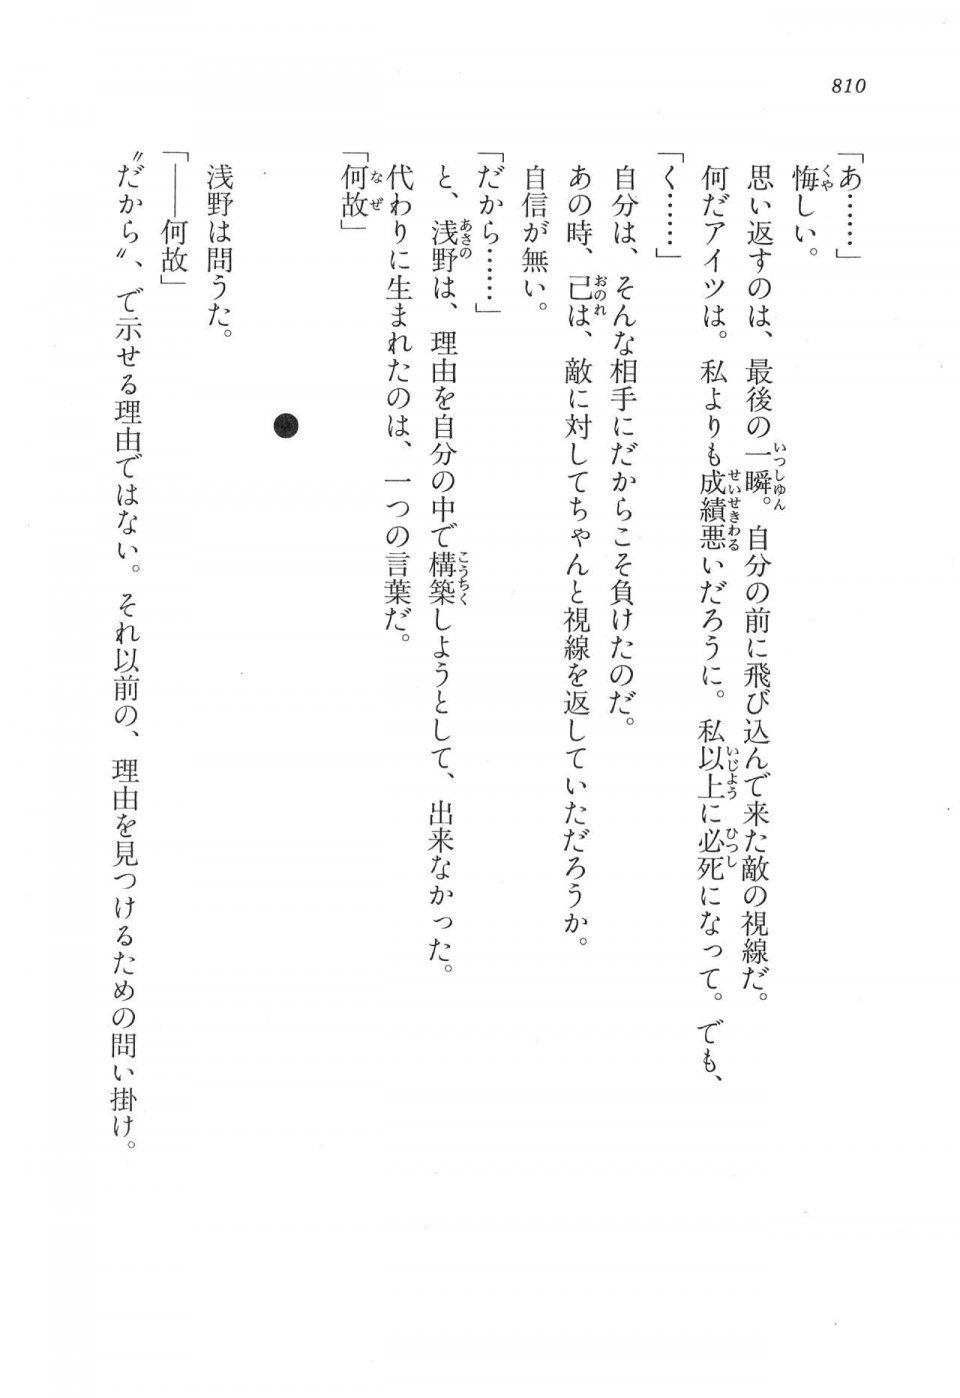 Kyoukai Senjou no Horizon LN Vol 17(7B) - Photo #812